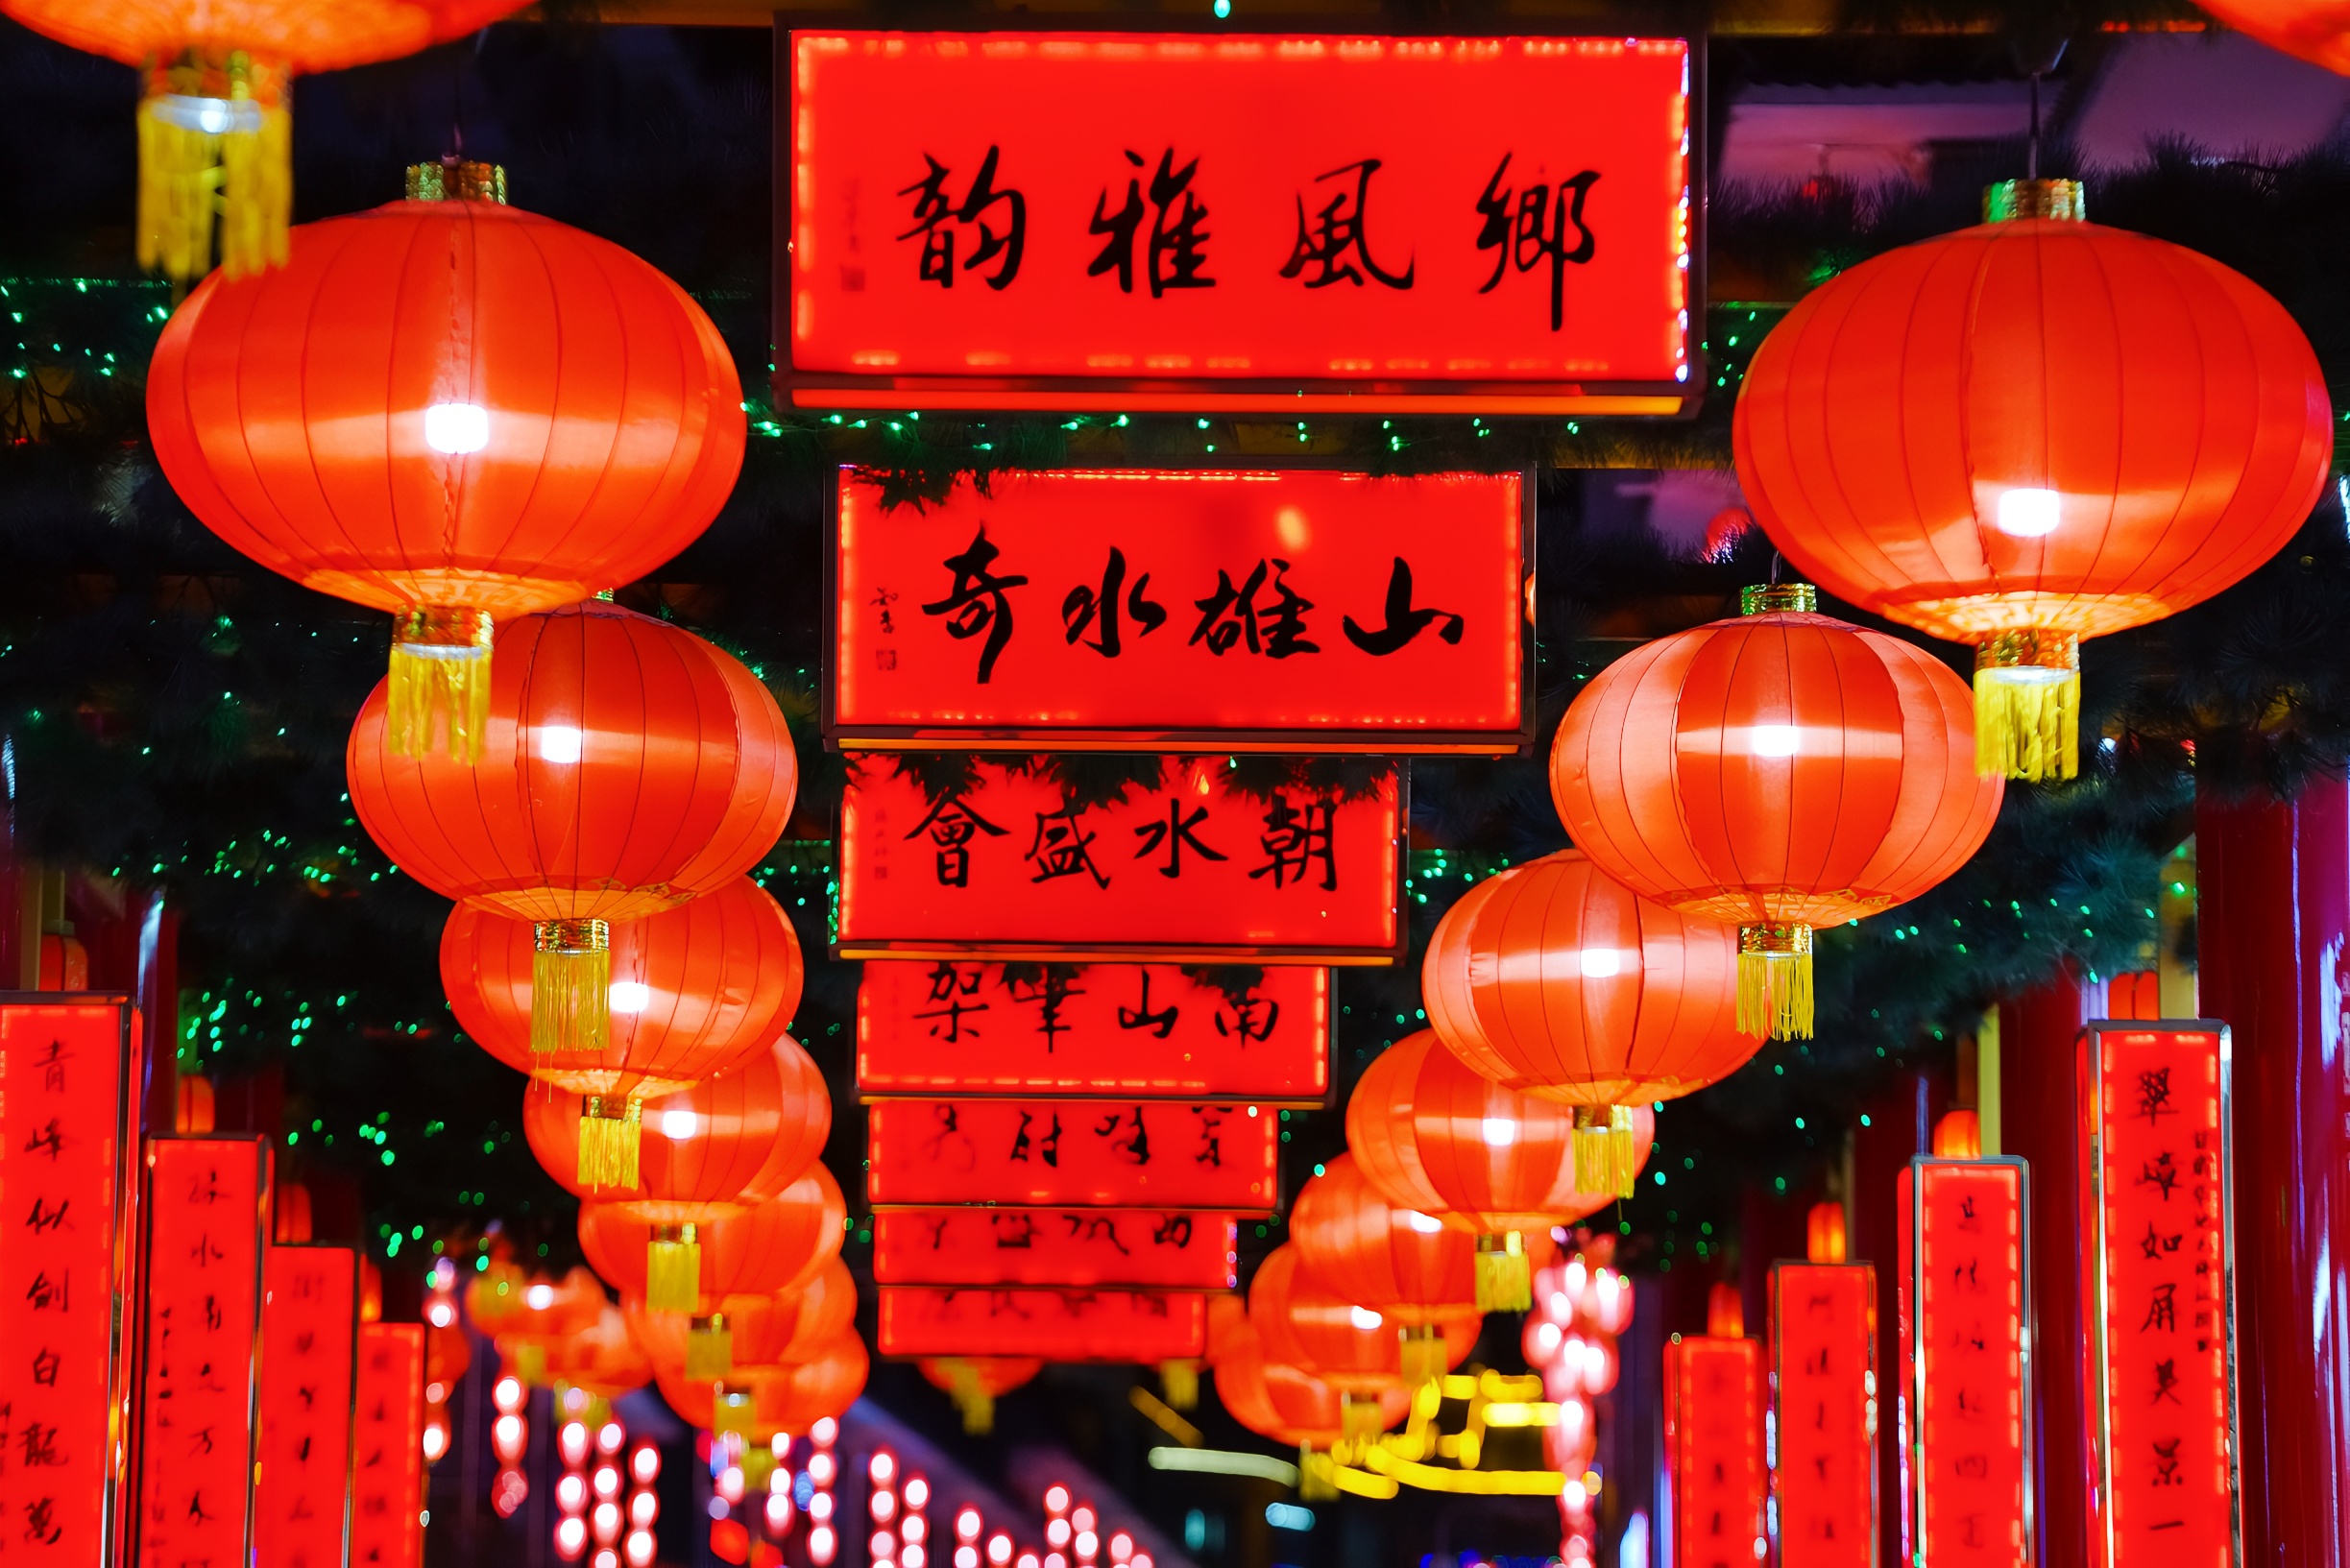 晚上信步来到甘南舟曲的“中国楹联文化第一街廊”，感受独具特色的楹联文化。舟曲成为全国少数民族地区第二